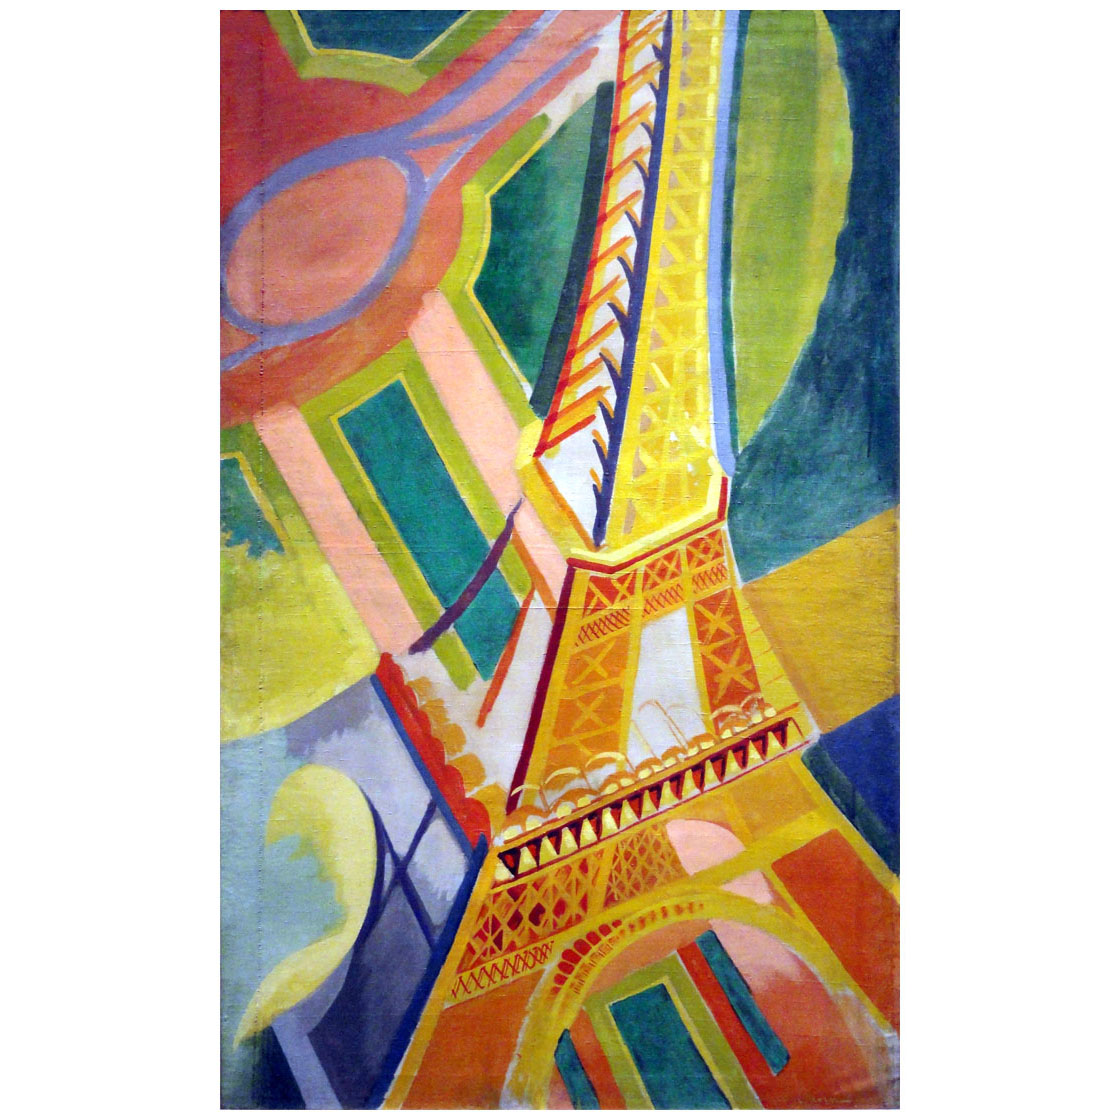 Robert Delaunay. Tour Eiffel. 1926. Centre Pompidou Paris